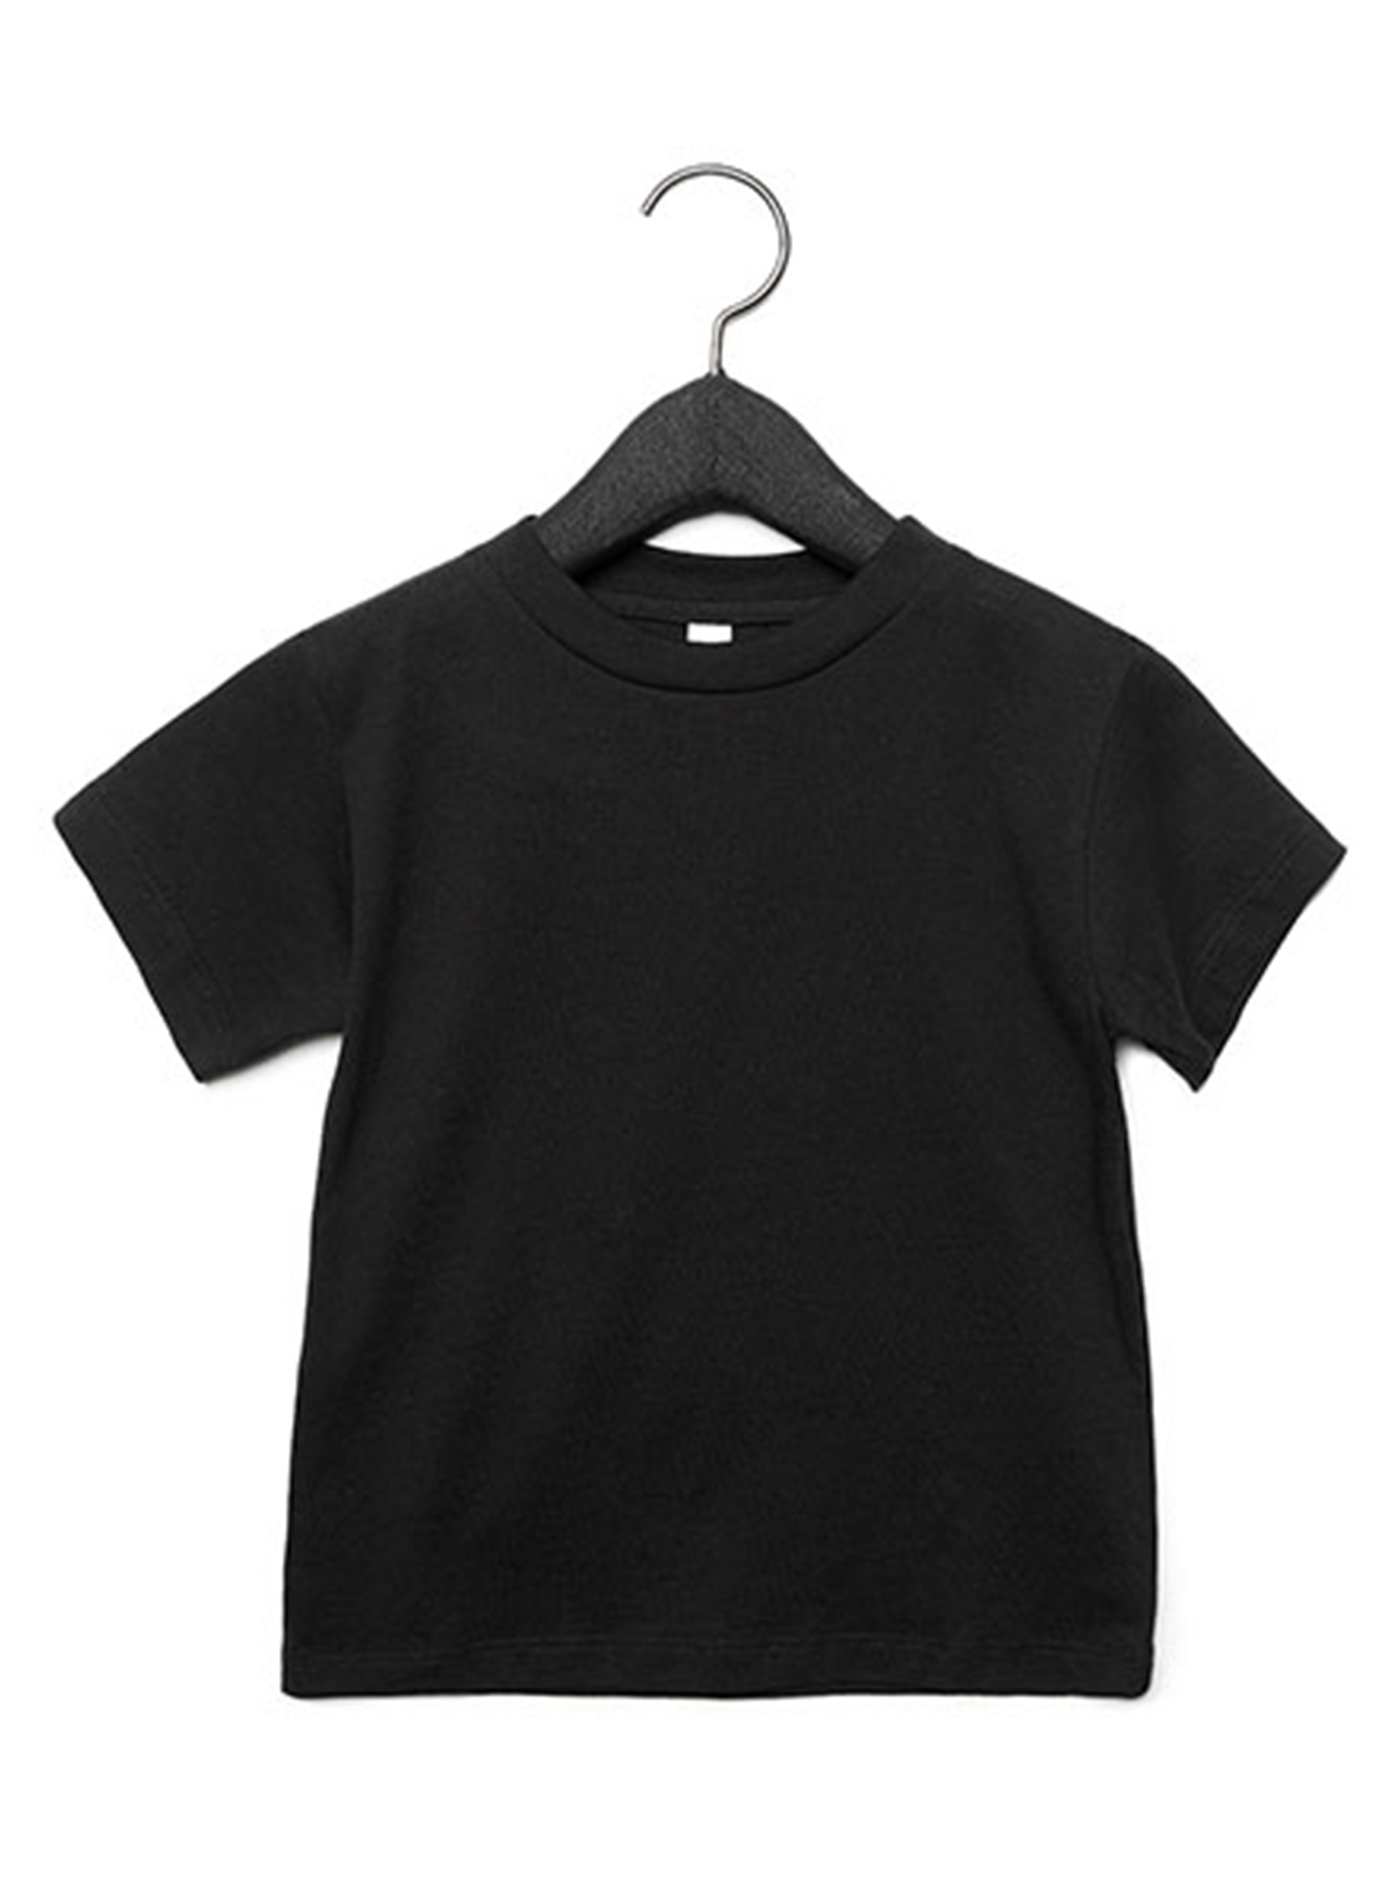 Dětské tričko Bella + Canvas Jersey - černá 2T (92)